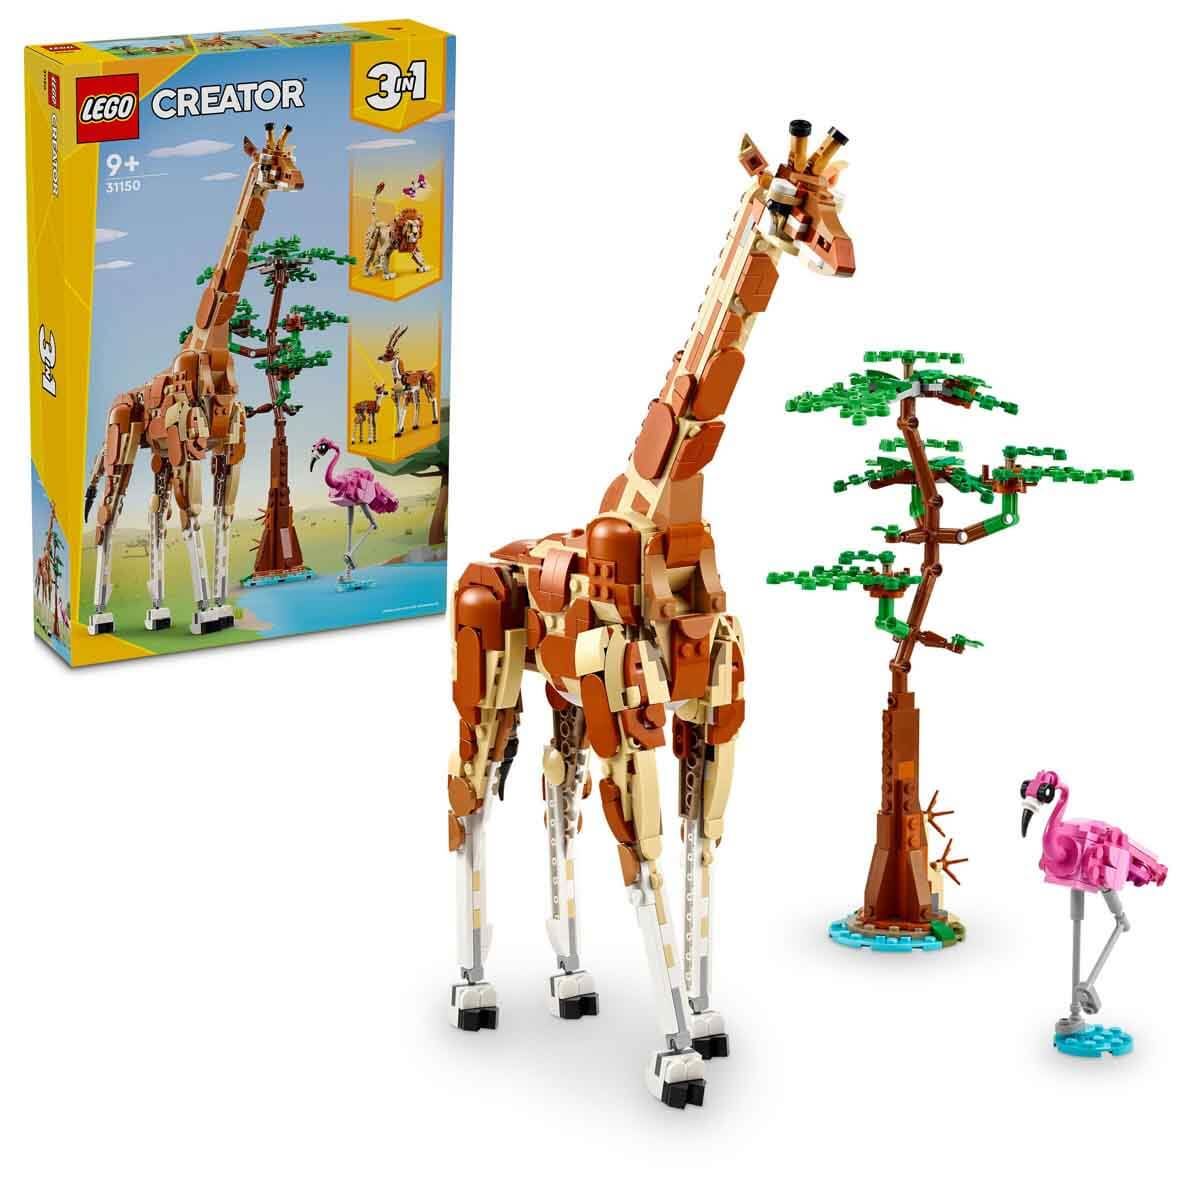 LEGO Creator Vahşi Safari Hayvanları 31150 - 9 Yaş ve Üzeri Çocuklar için İnşa Edilebilen Zürafa, Ceylan ve Aslan Model Seçenekleri İçeren 3'ü 1 Arada Yaratıcı Oyuncak Yapım Seti